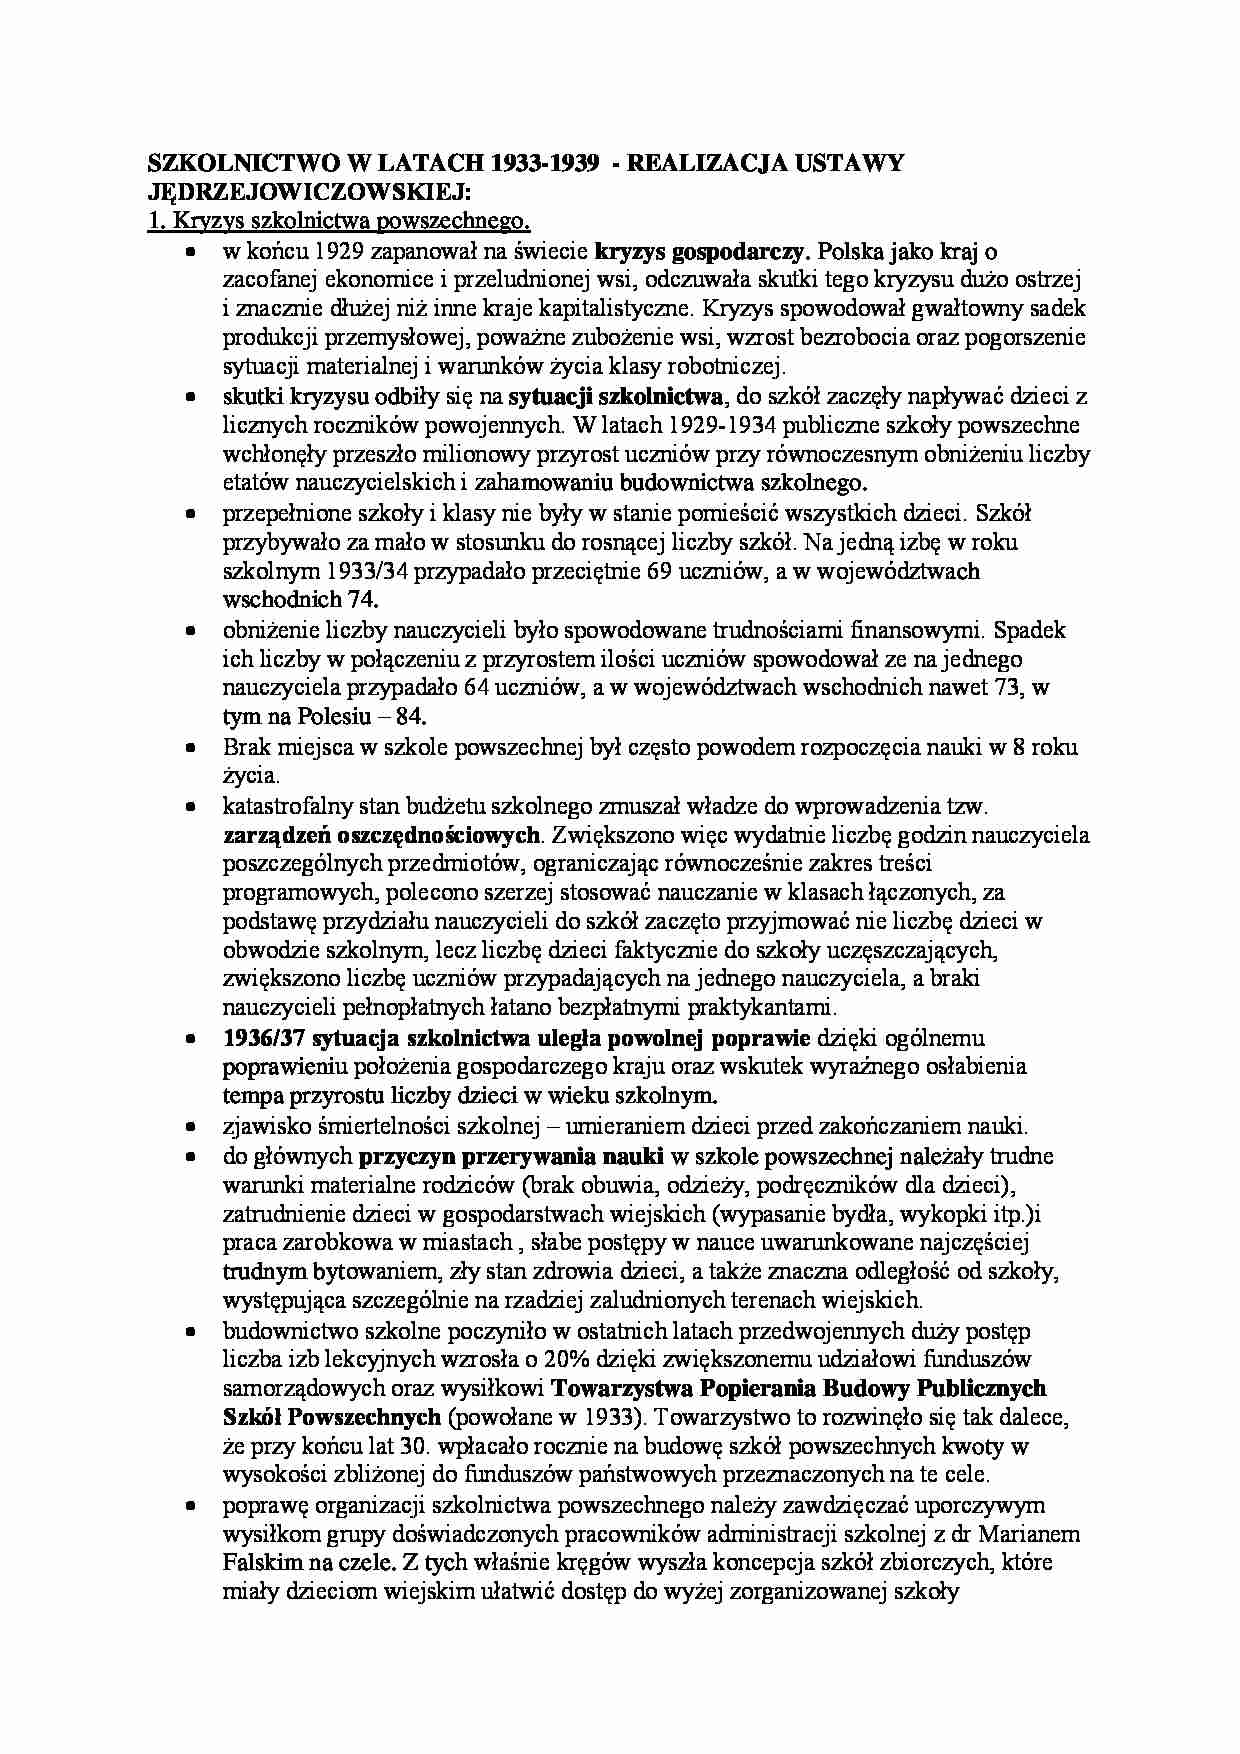 Realizacja ustawy Jędrzejewicza - strona 1